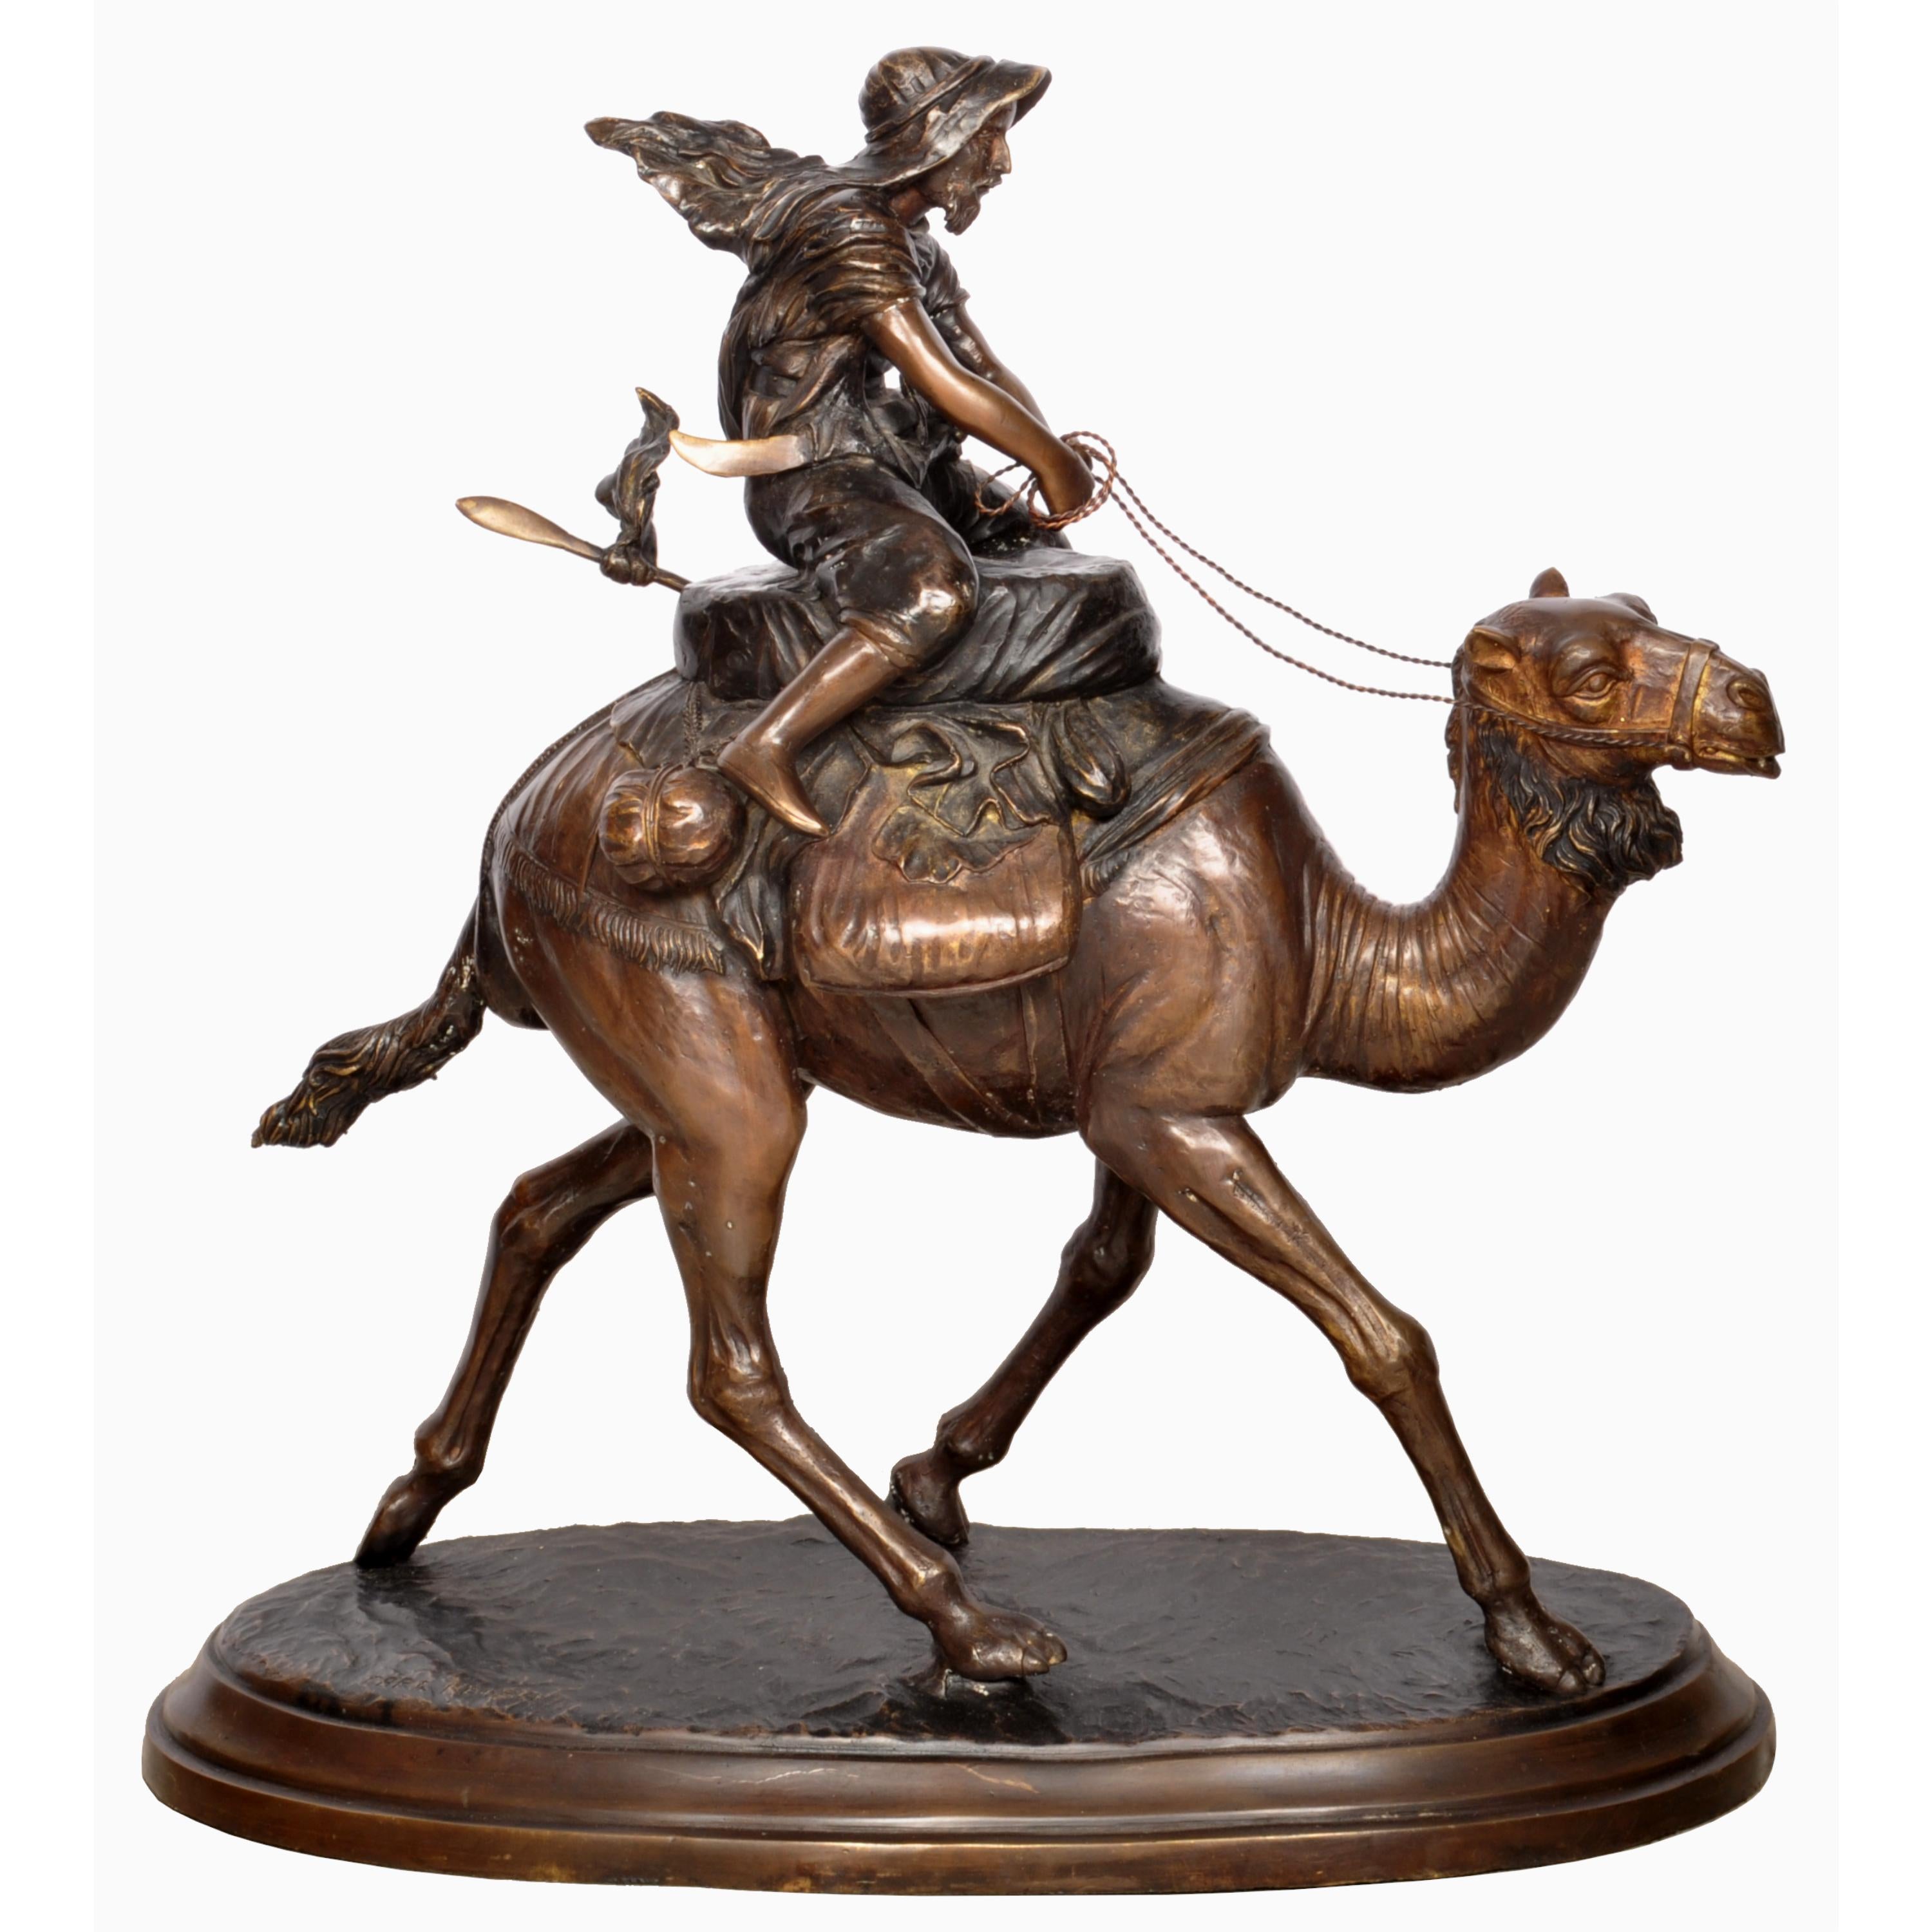 Un grand bronze viennois moulé dans le style orientaliste du sculpteur autrichien Carl Kauba (1865-1922).
Le bronze est finement modelé comme un chameau dromadaire arabe avec un cavalier à califourchon, représentant peut-être T.E. Lawrence (Lawrence